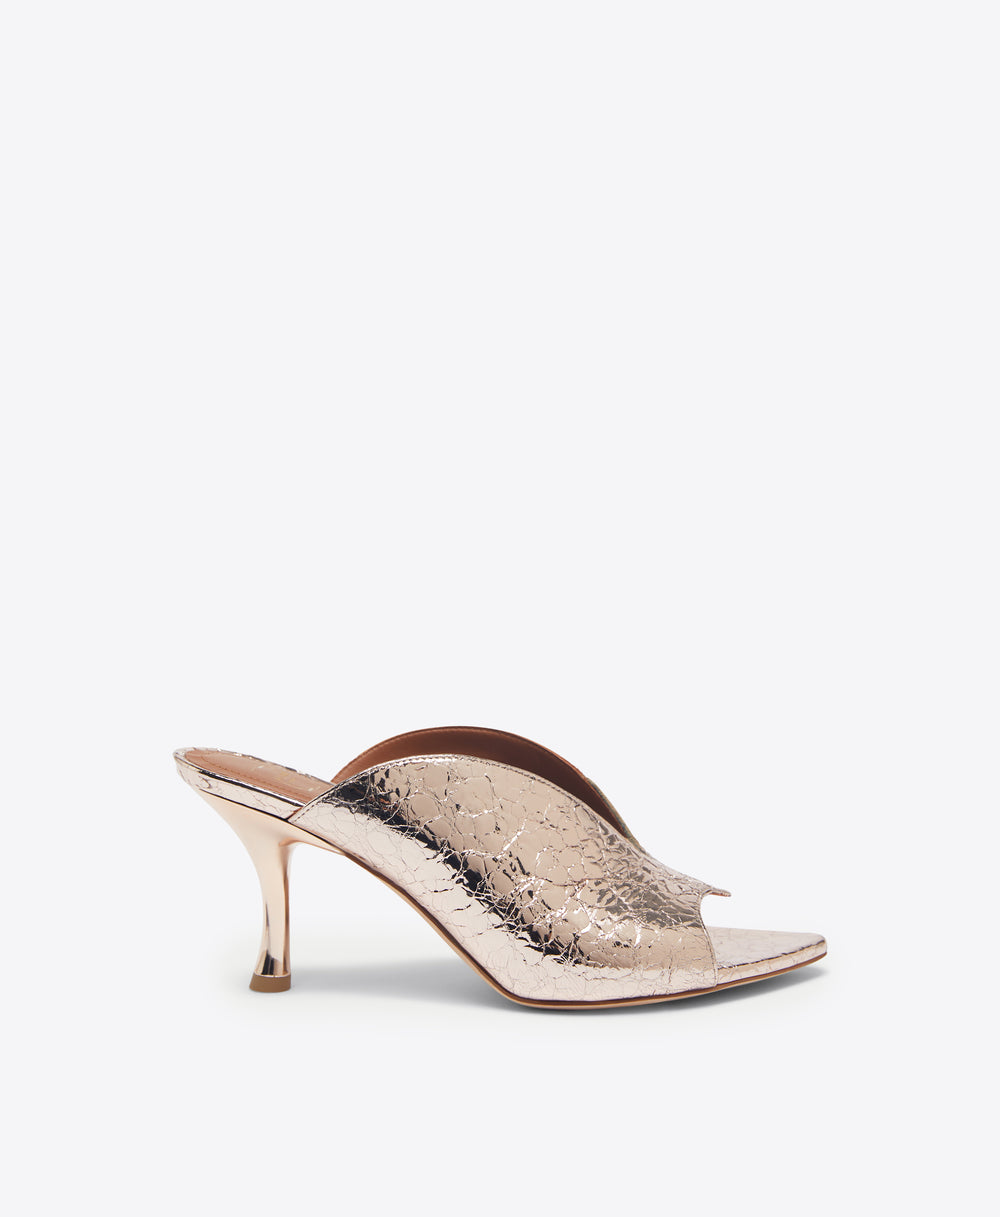 Louis Vuitton Pink Patent Leather Gold Trim Bow Mules Heels Pumps 38 shoes  ref.567903 - Joli Closet